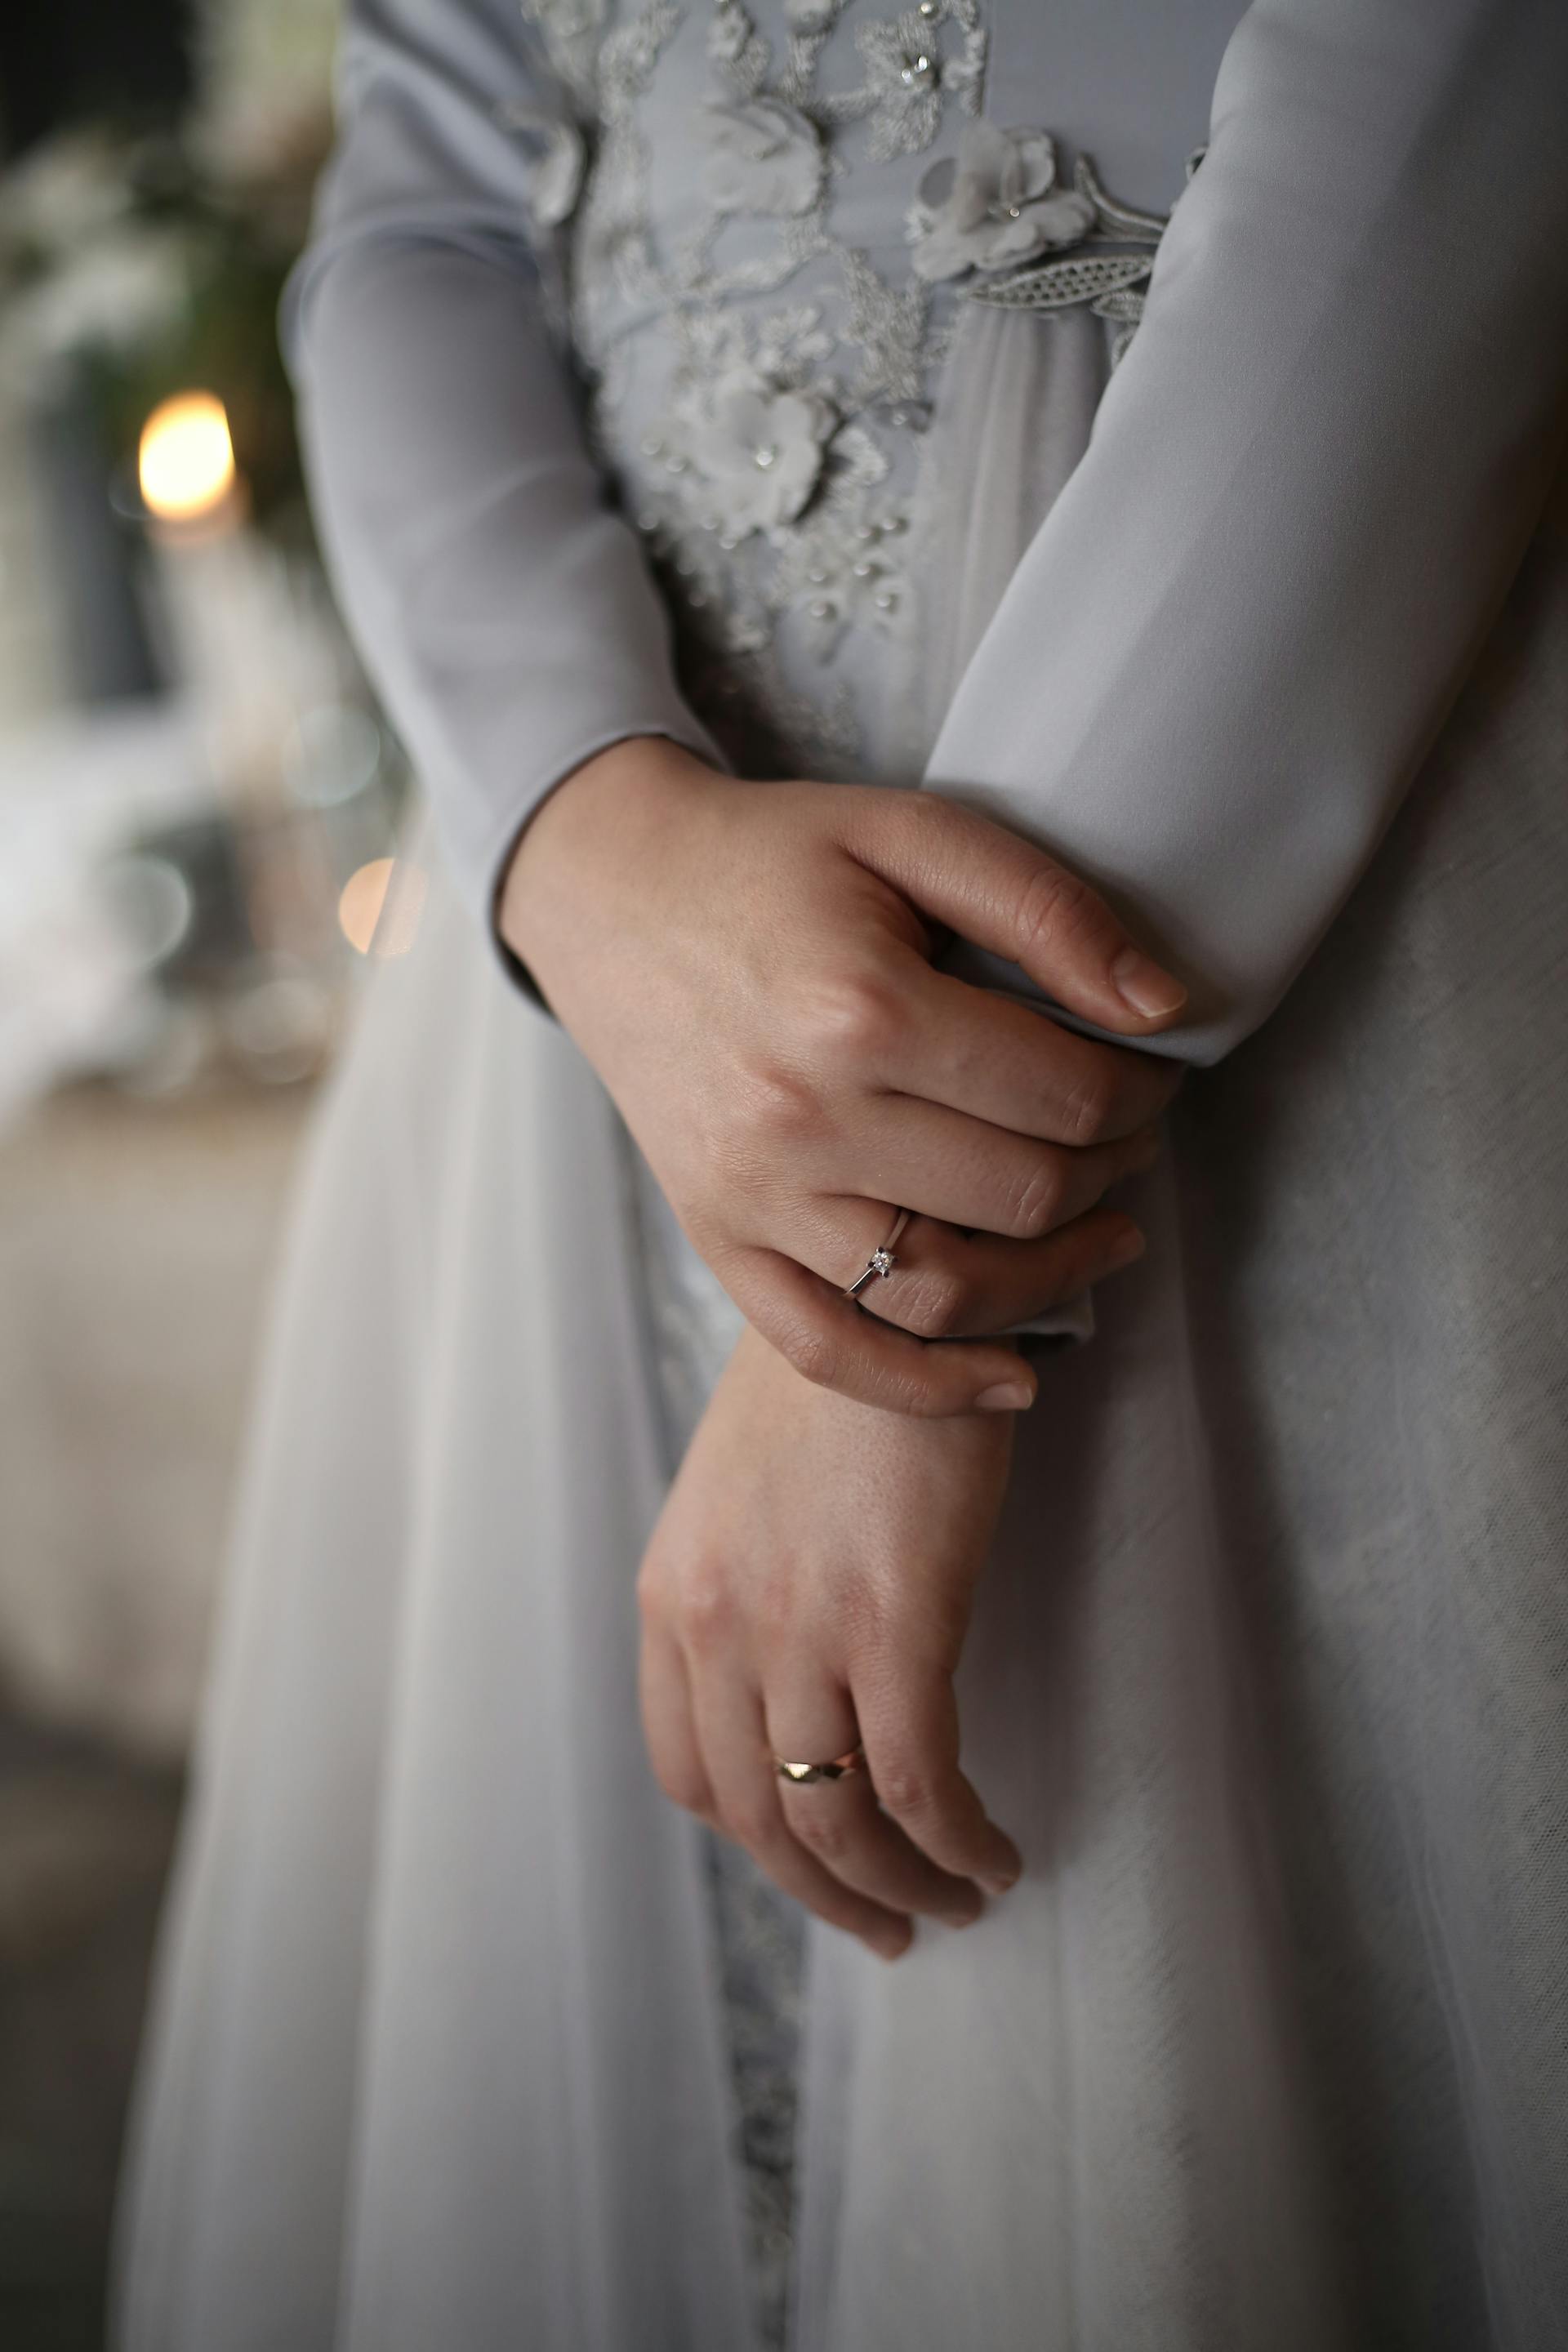 Eine Nahaufnahme einer Frau, die ihr Handgelenk umklammert | Quelle: Pexels